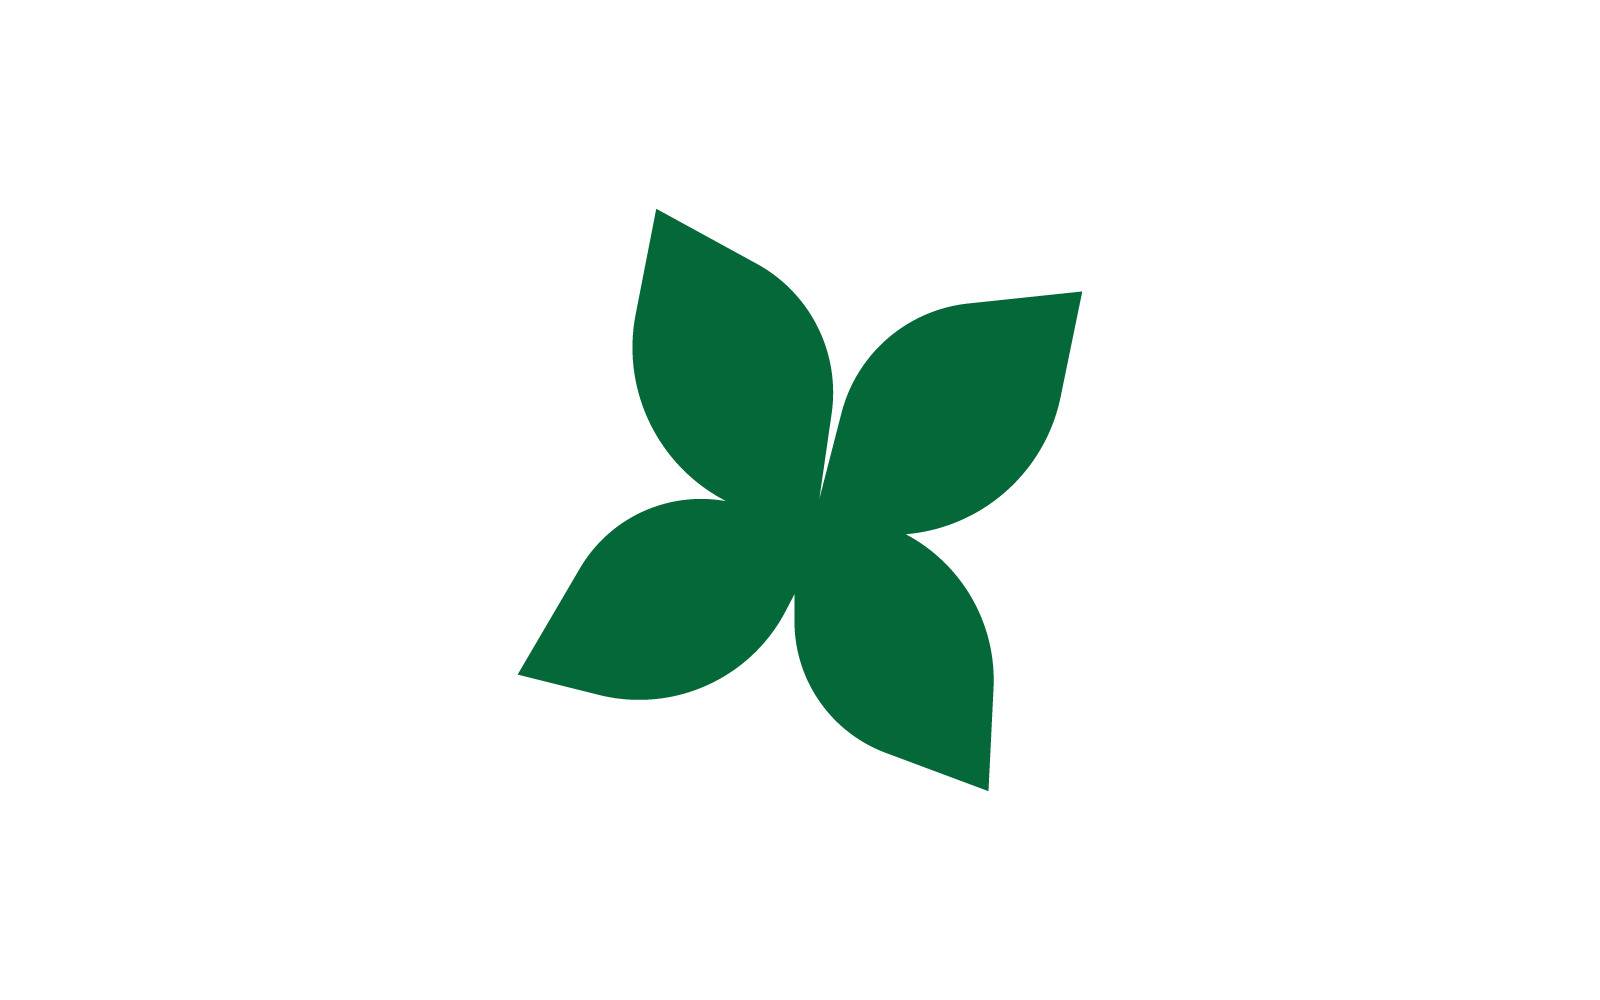 Green leaf logo vector ilustration template